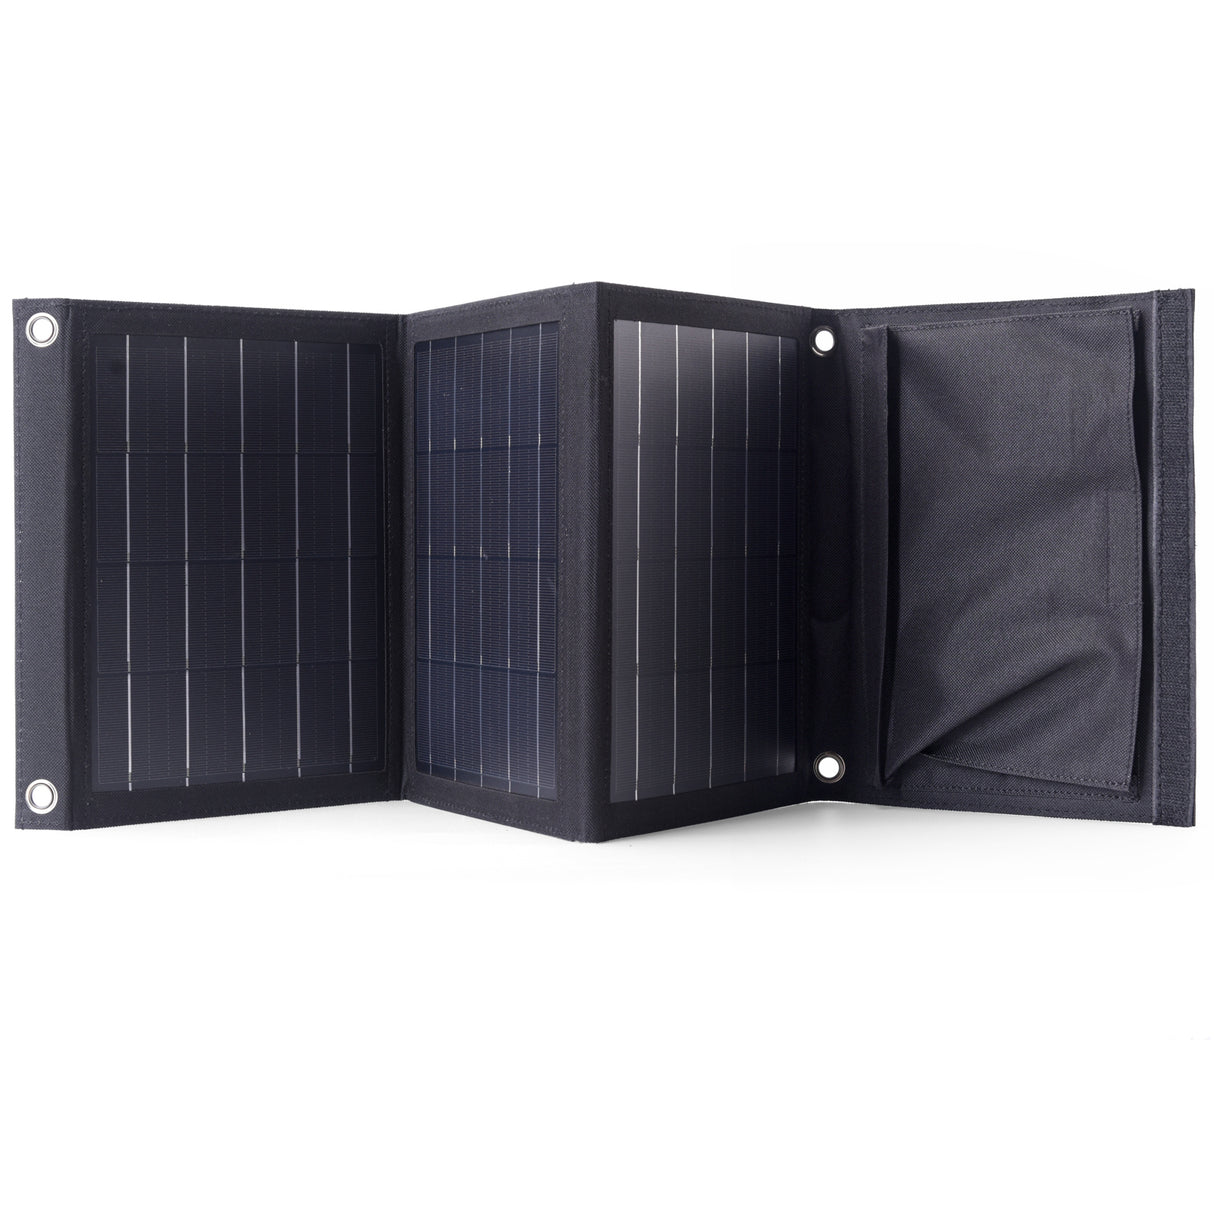 Chargeur solaire pliable imperméable portatif de panneau solaire 22W double chargeur solaire de ports d'USB